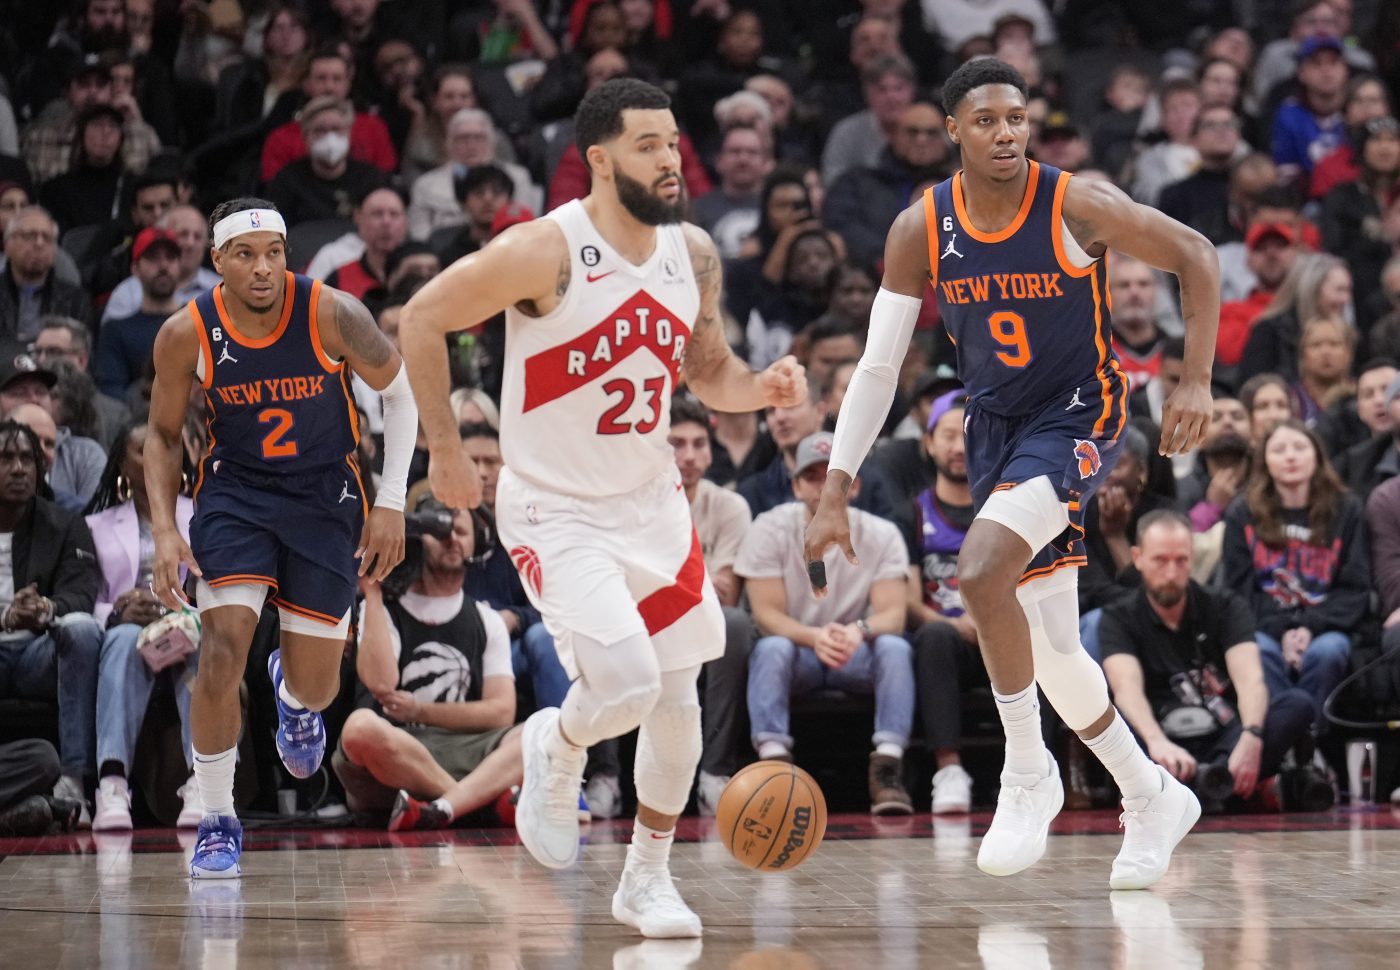 NBA News: Poważny wyciek danych! New York Knicks pozywają Toronto Raptors!